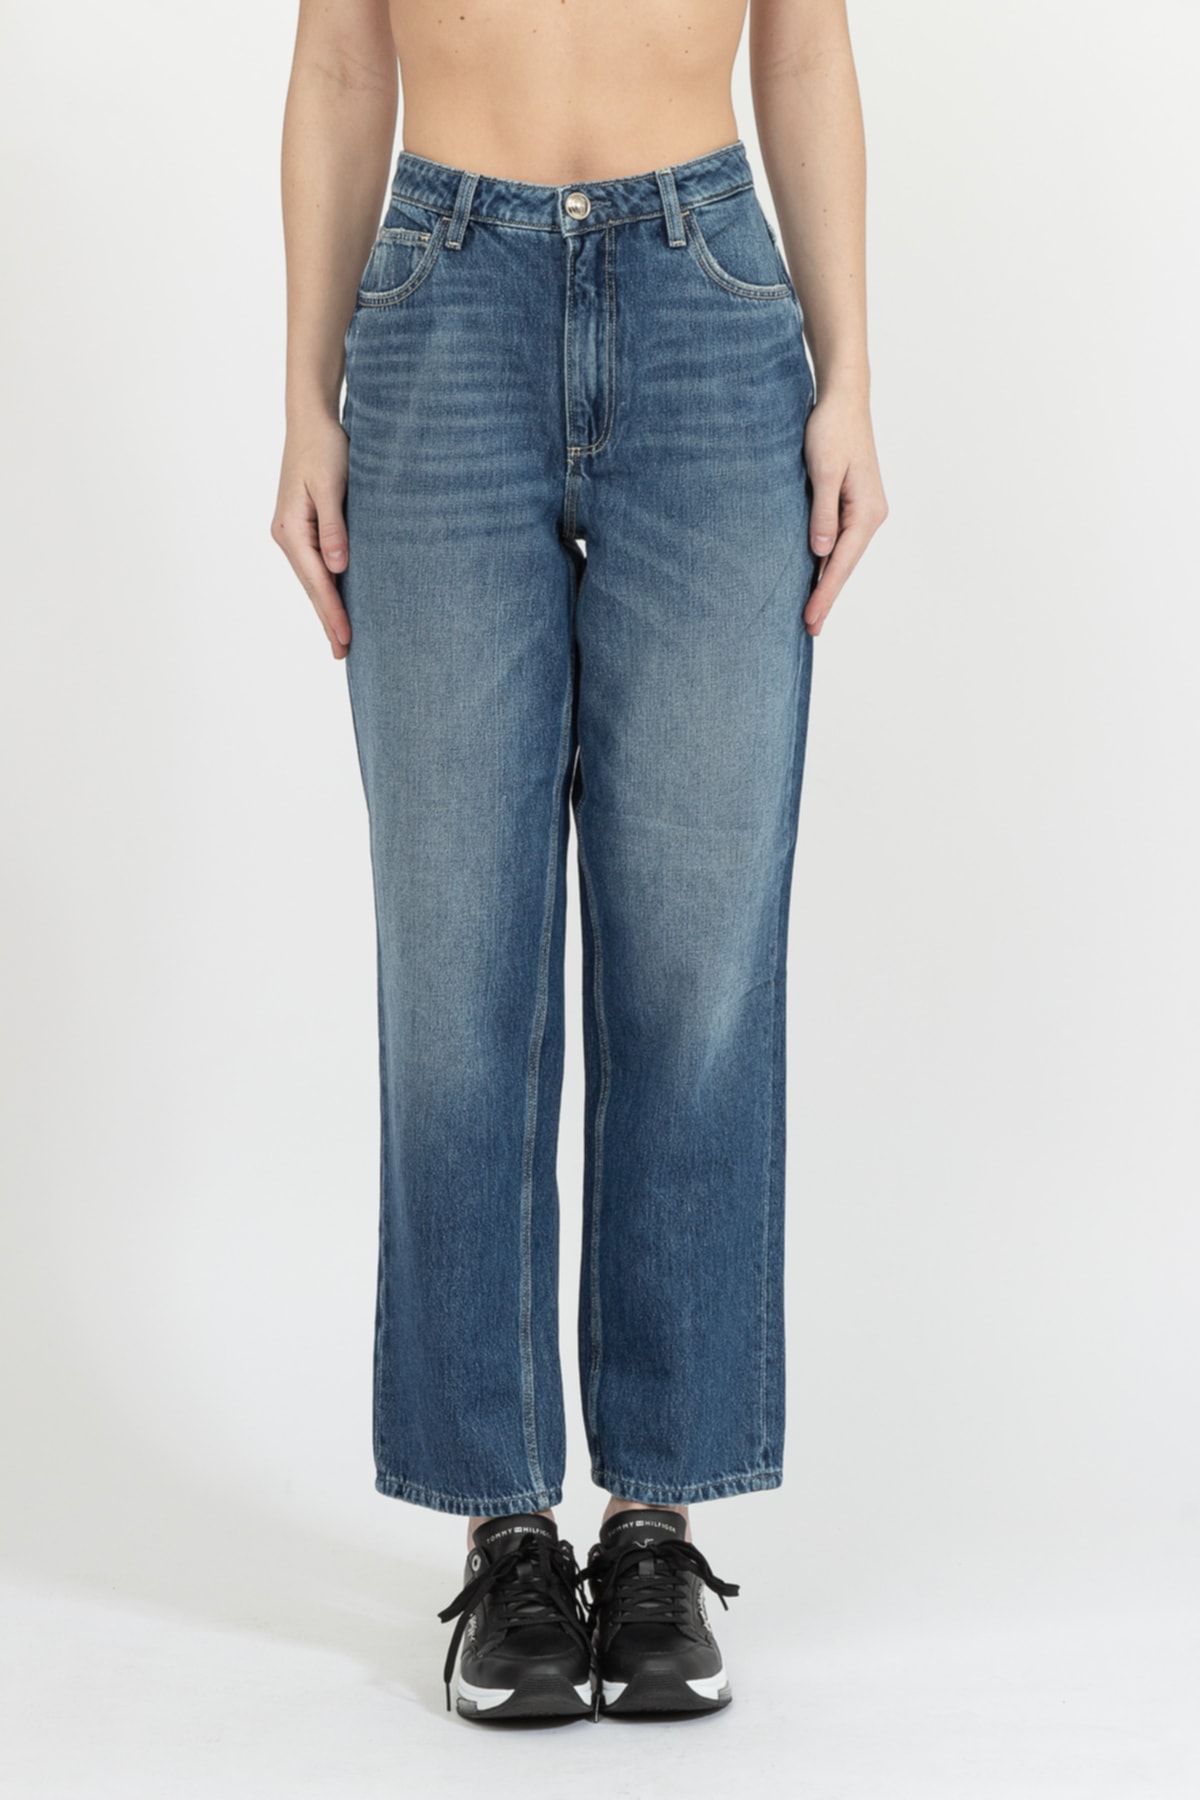 شلوار جین آبی مدل گشاد قد 90 زنانه گس Guess (برند آمریکا)